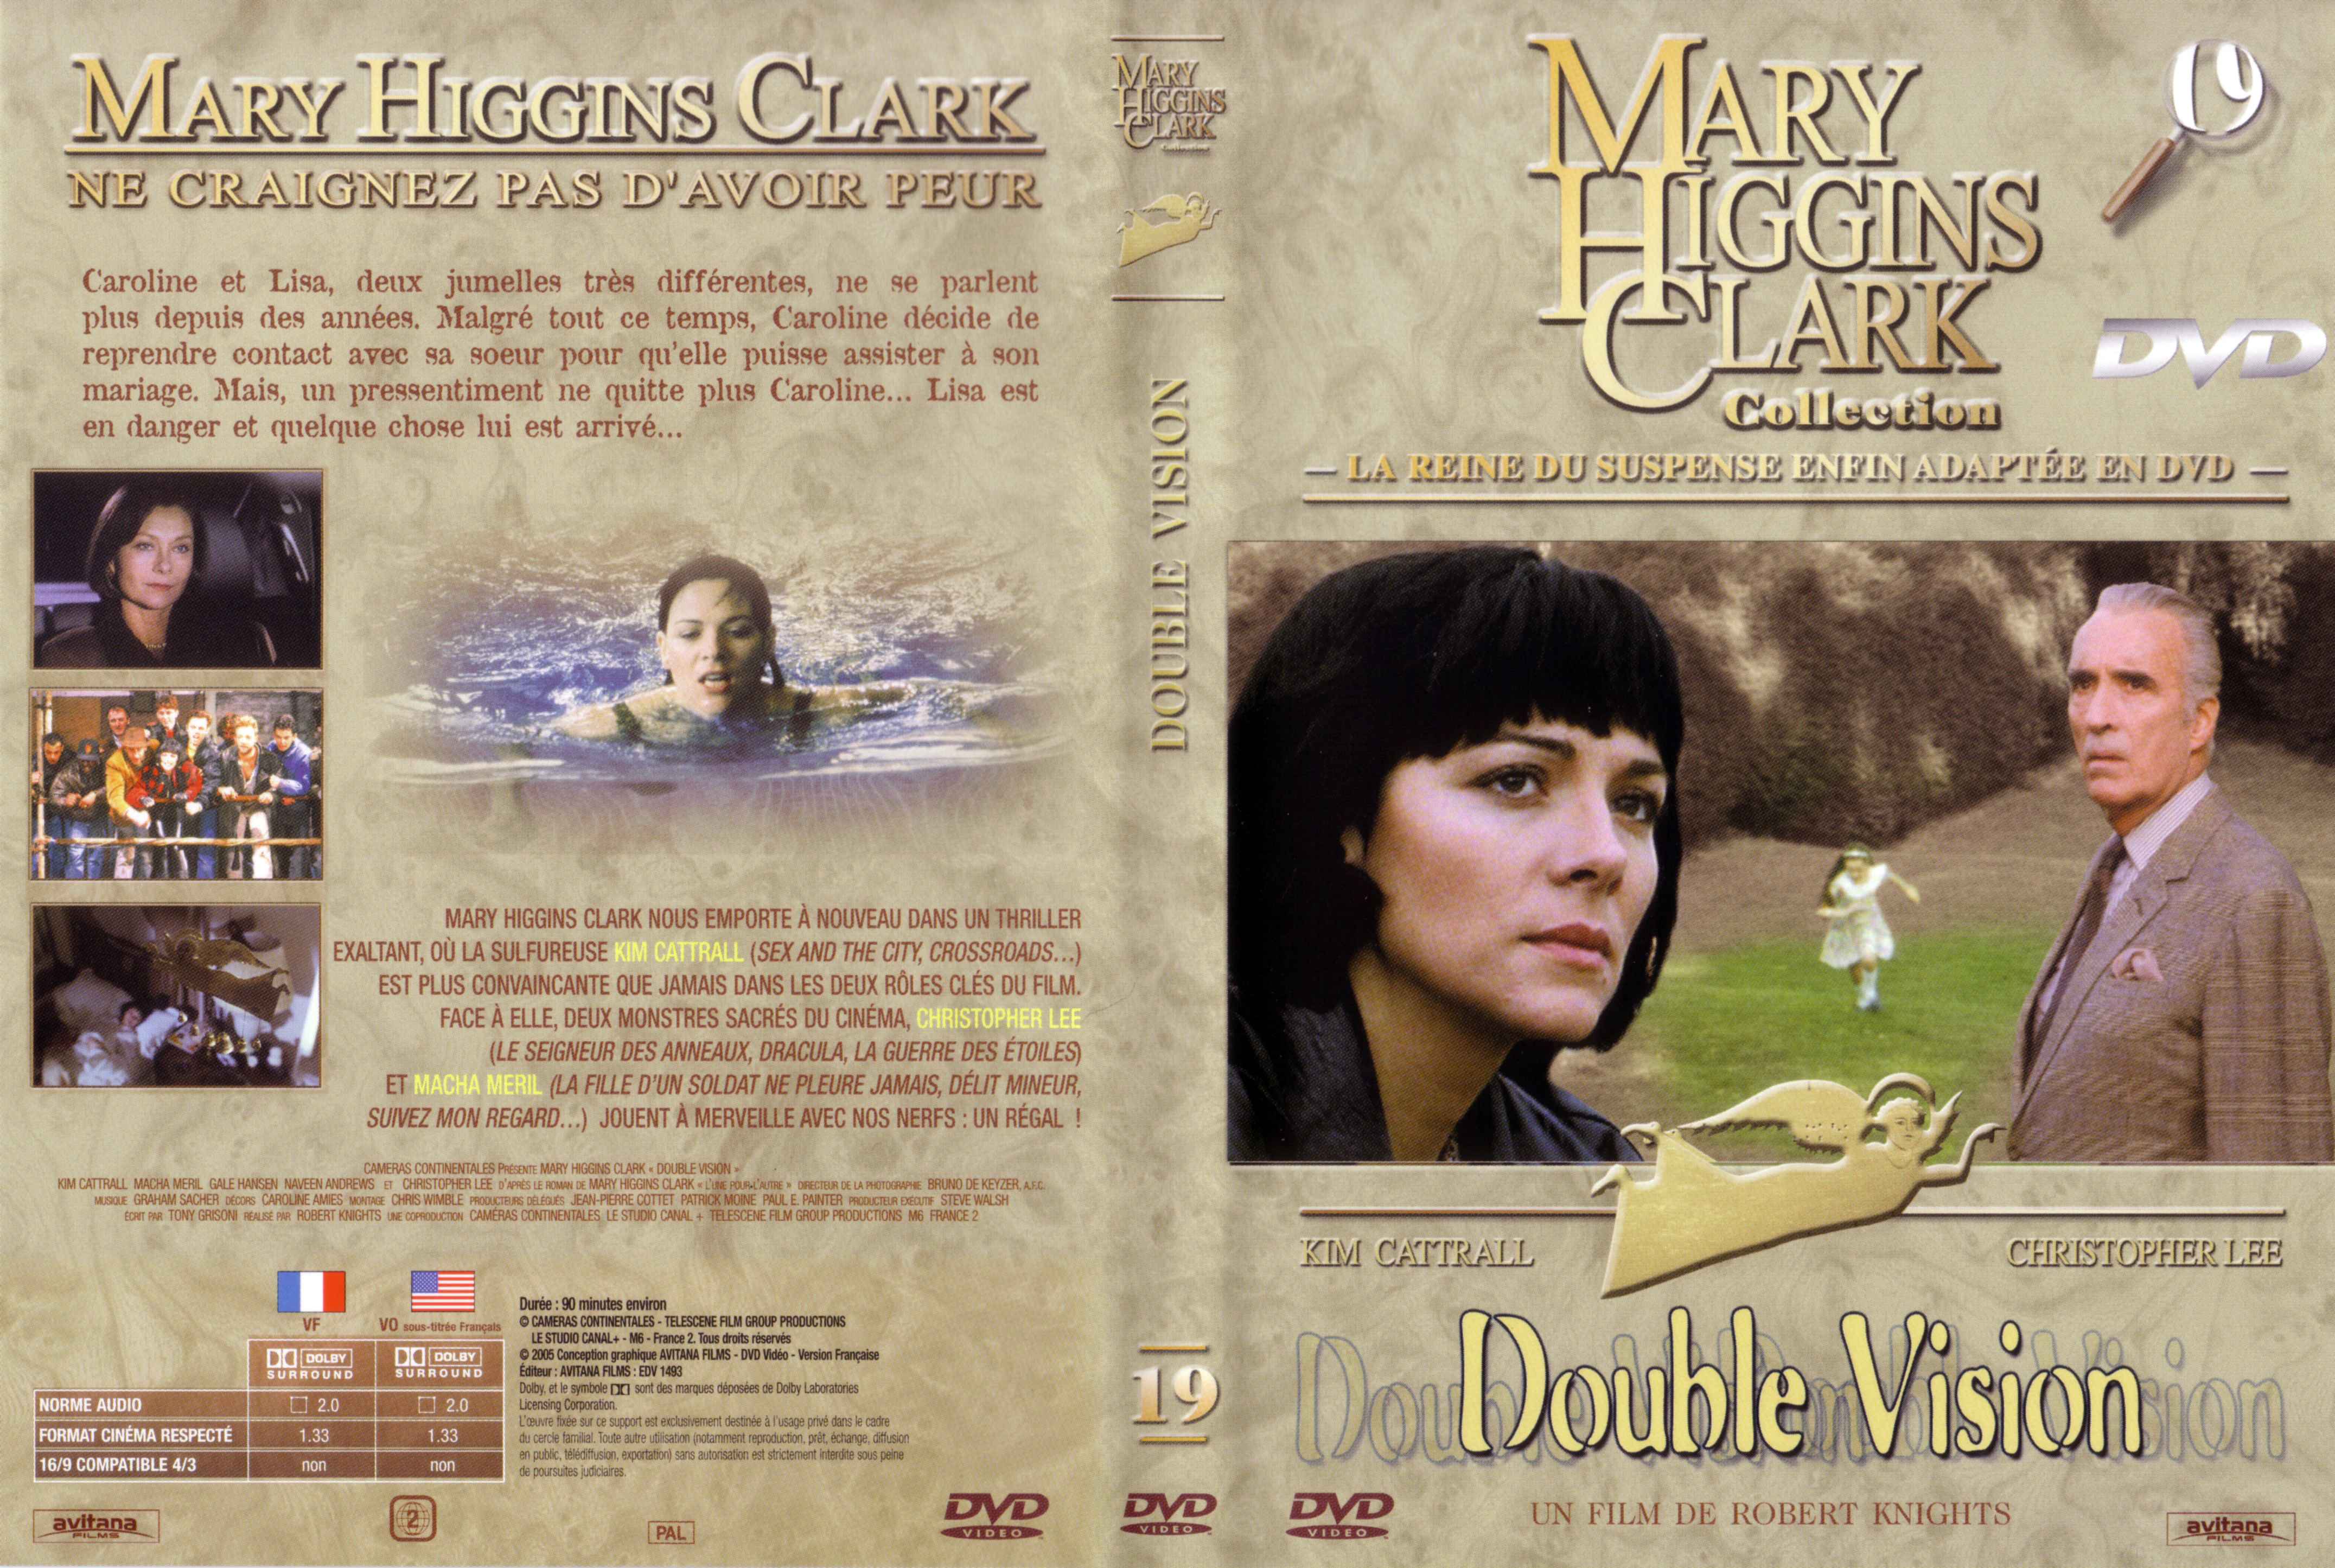 Jaquette DVD de Mary Higgins Clark vol 19 - Double vision - Cinéma Passion4304 x 2890